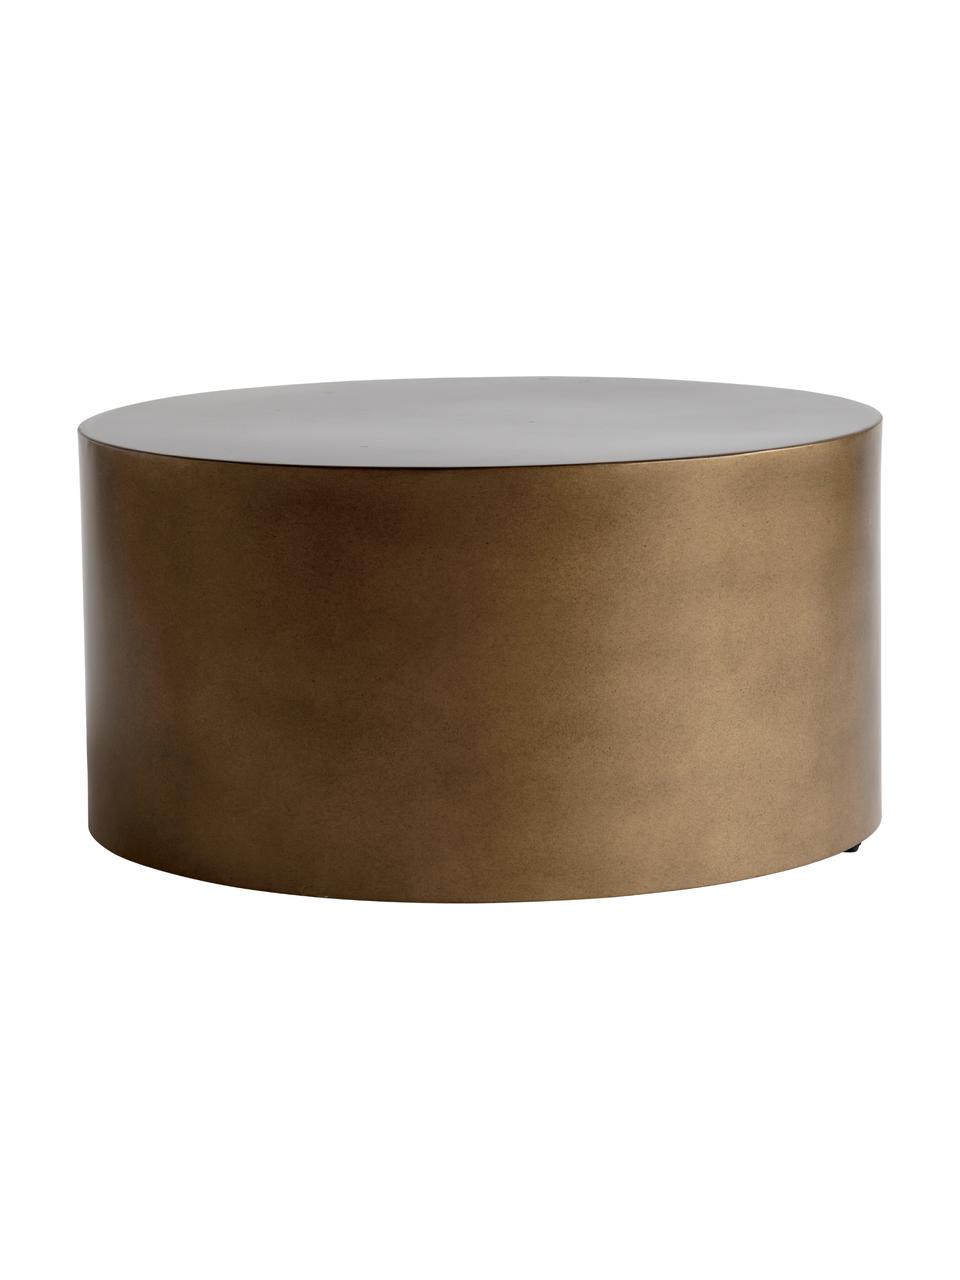 Ronde metalen salontafel Metdrum in honingkleuren, Metaal, Honingkleurig, Ø 60 x H 30 cm